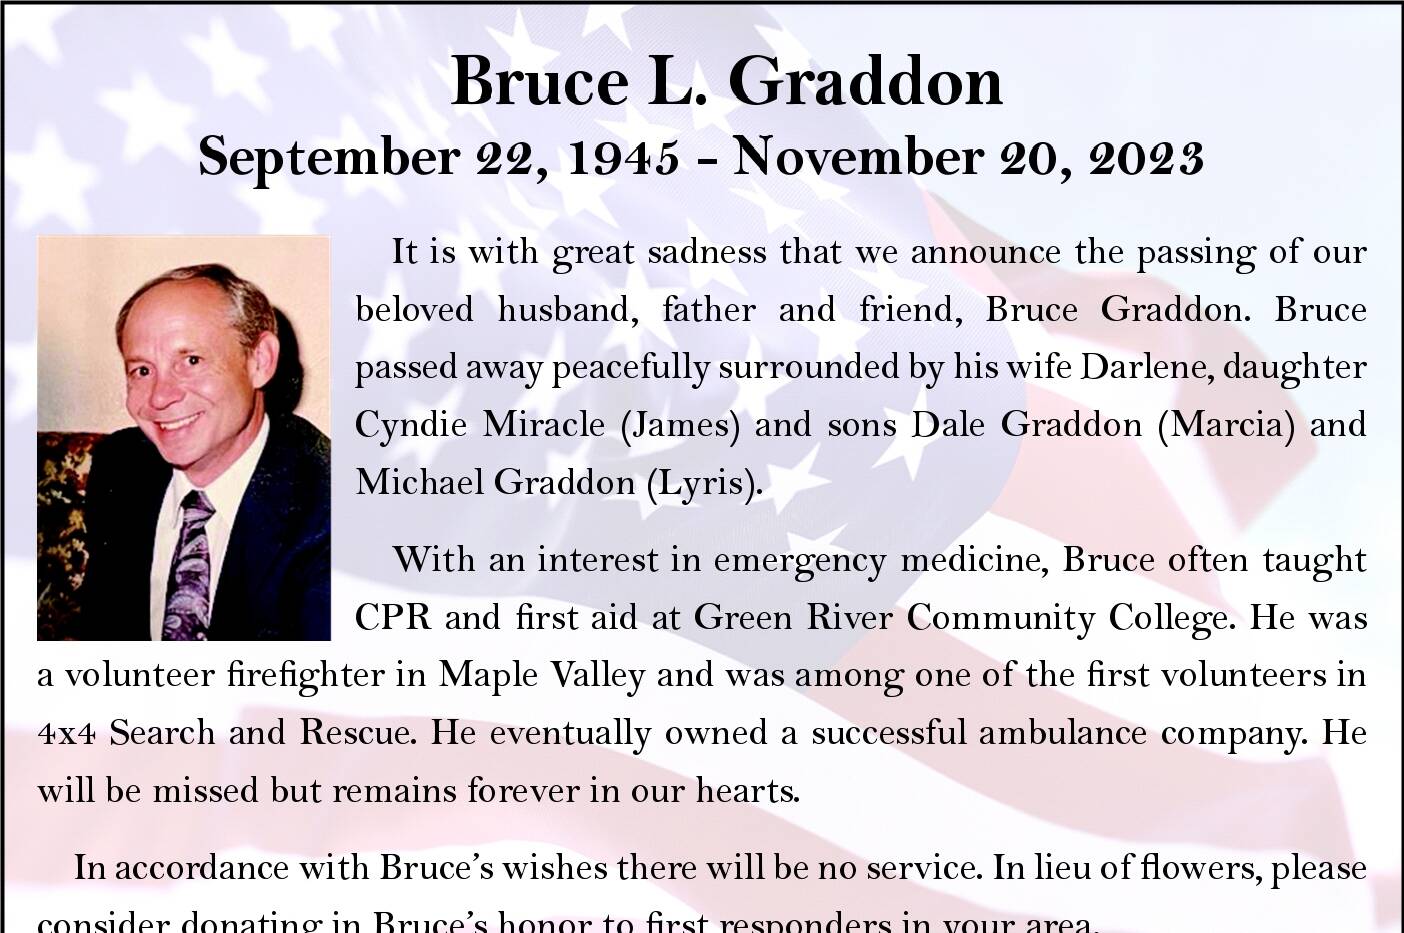 Bruce Graddon